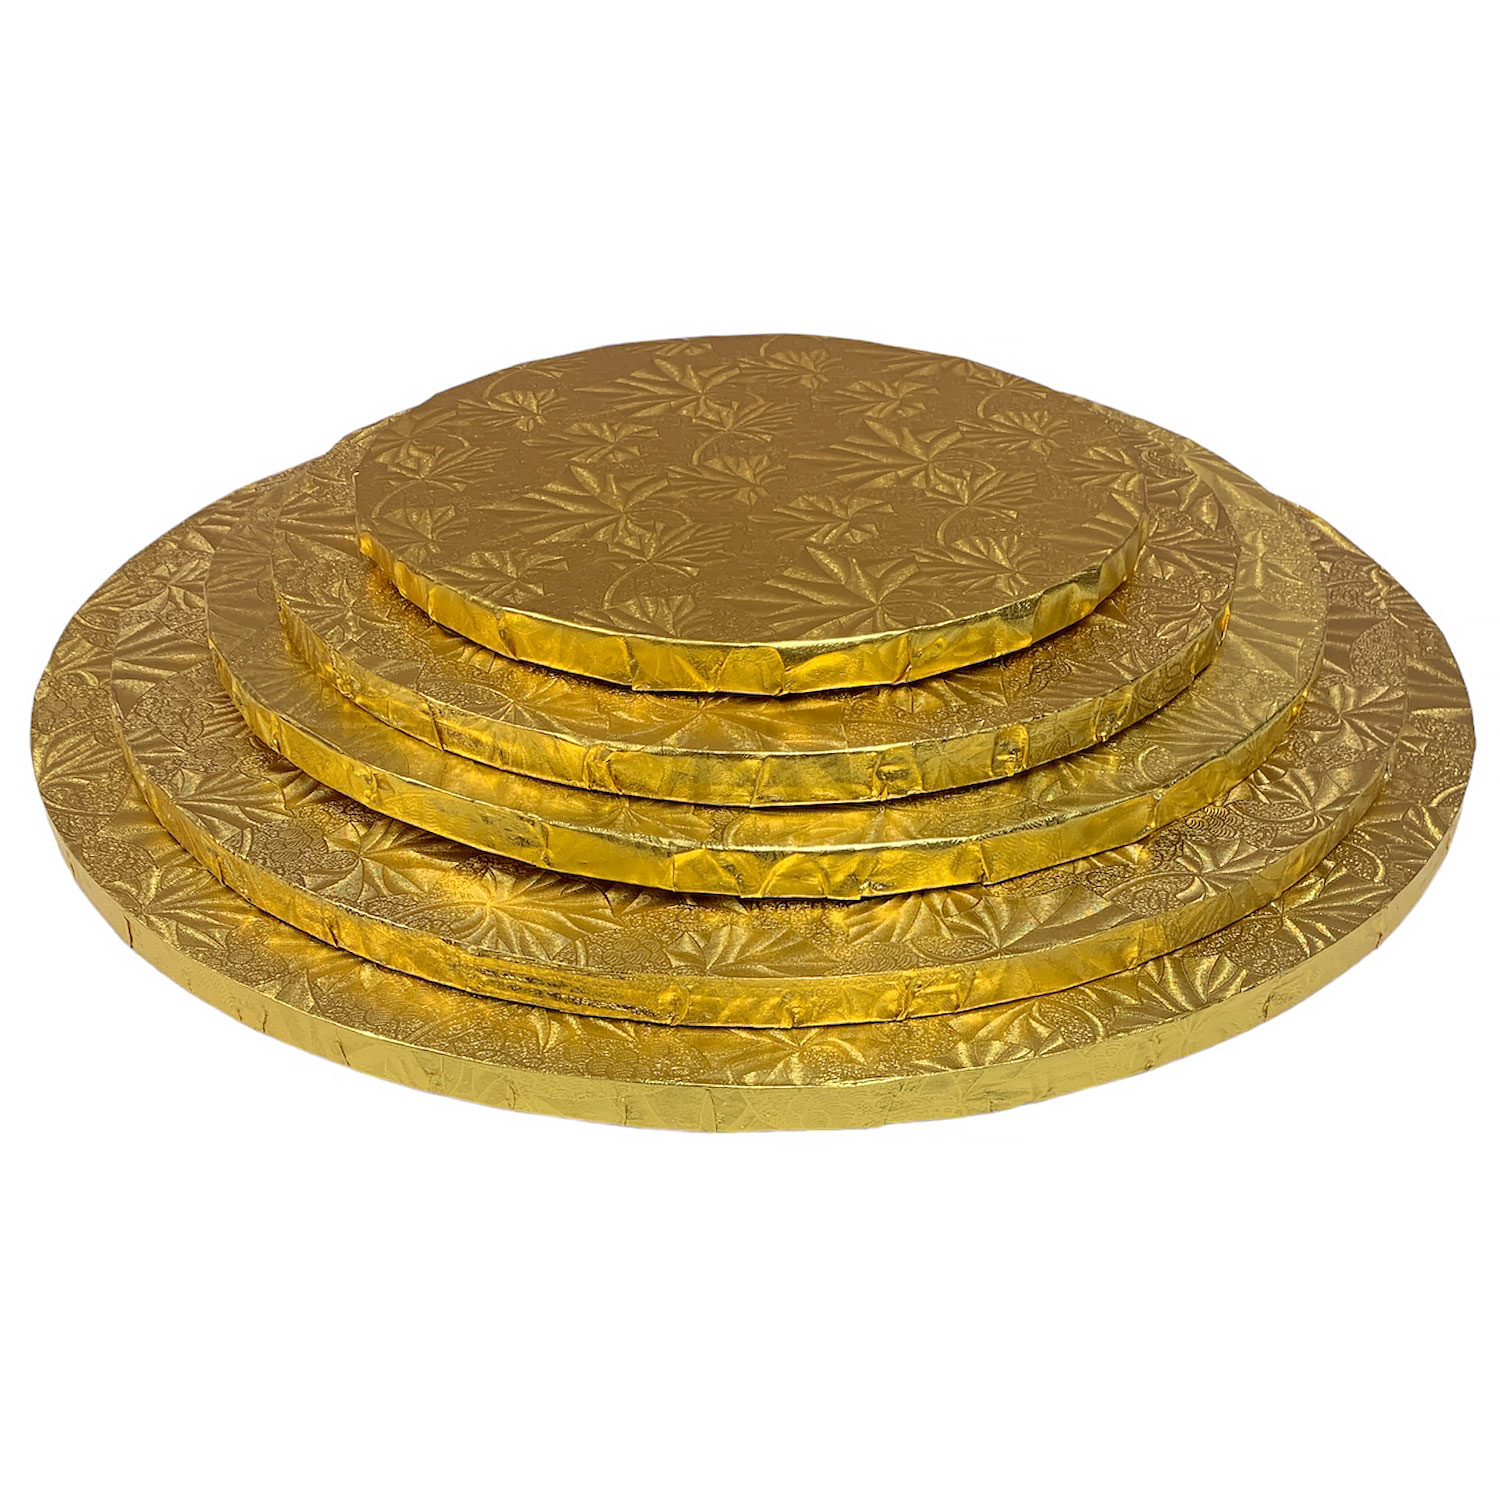 16" Round Gold Foil Cake Drum